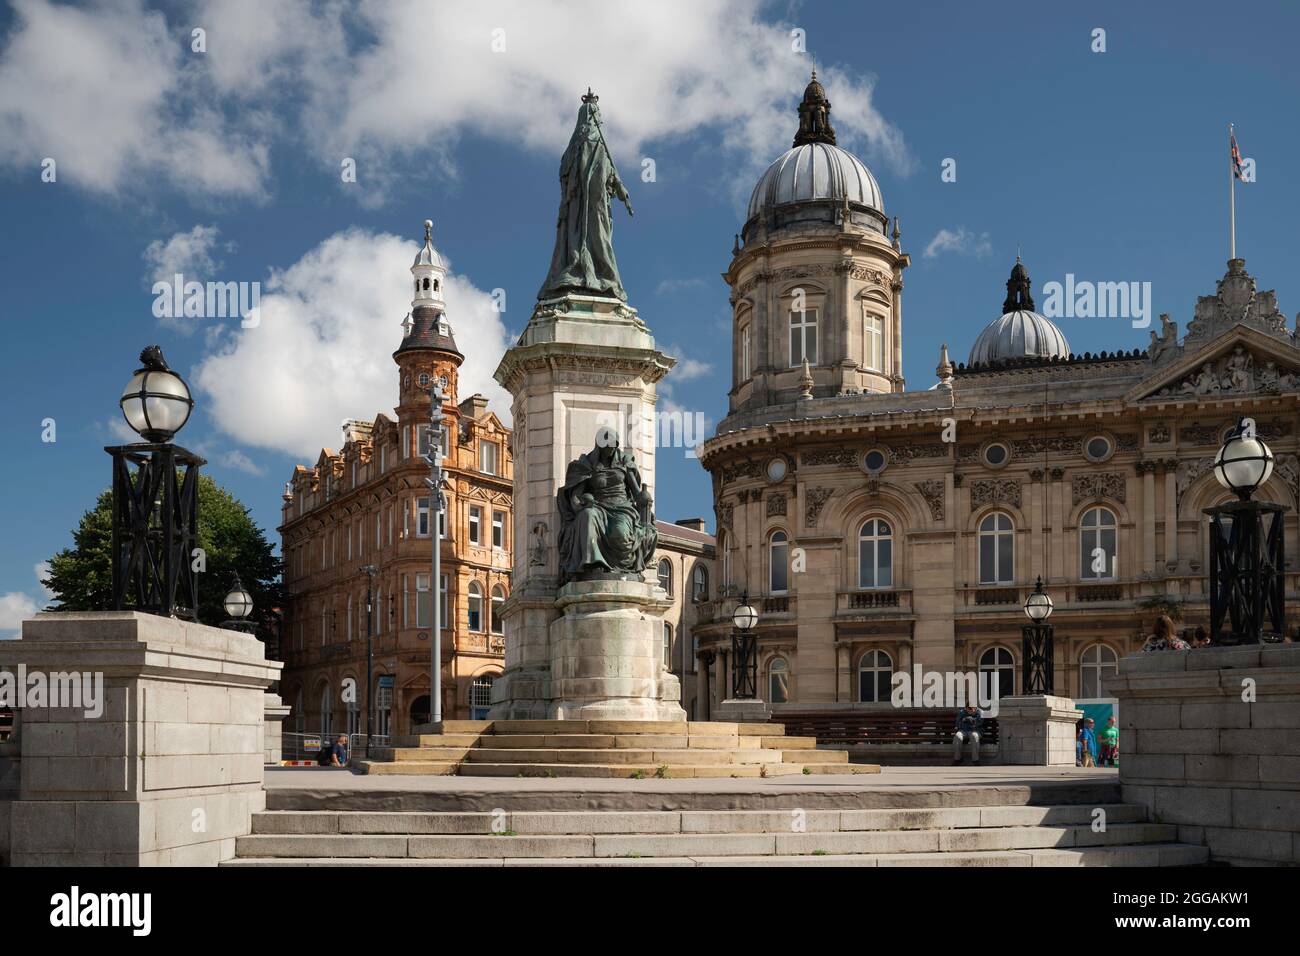 Victoria Square con importanti monumenti storici come statue, edifici e attrazioni turistiche nel centro della città di Hull, Regno Unito. Foto Stock